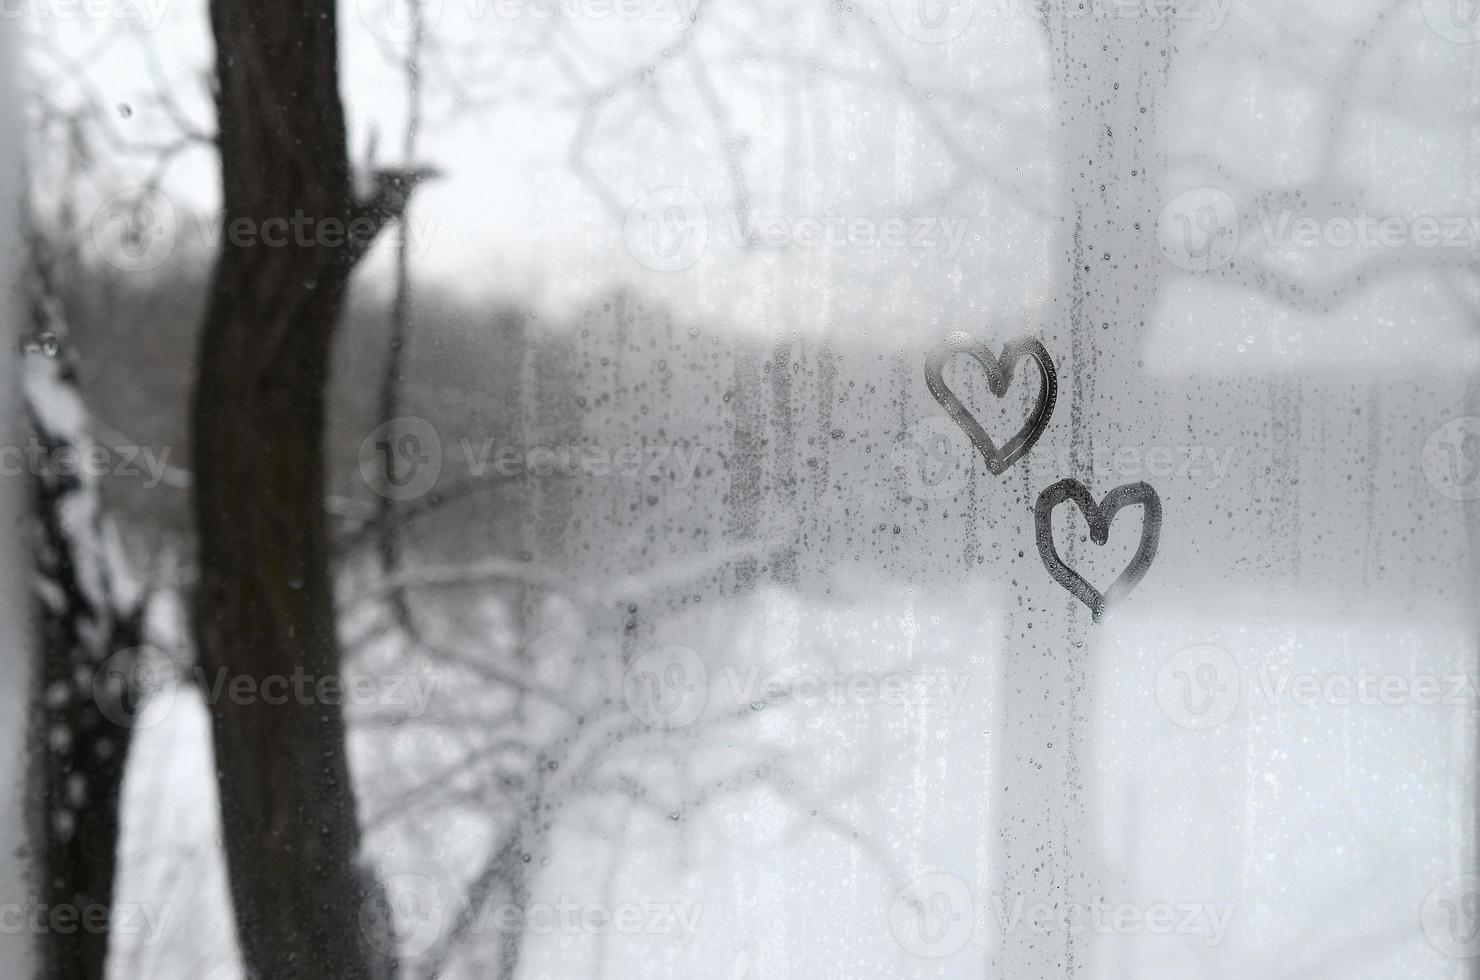 dois corações pintados em um vidro embaçado no inverno foto